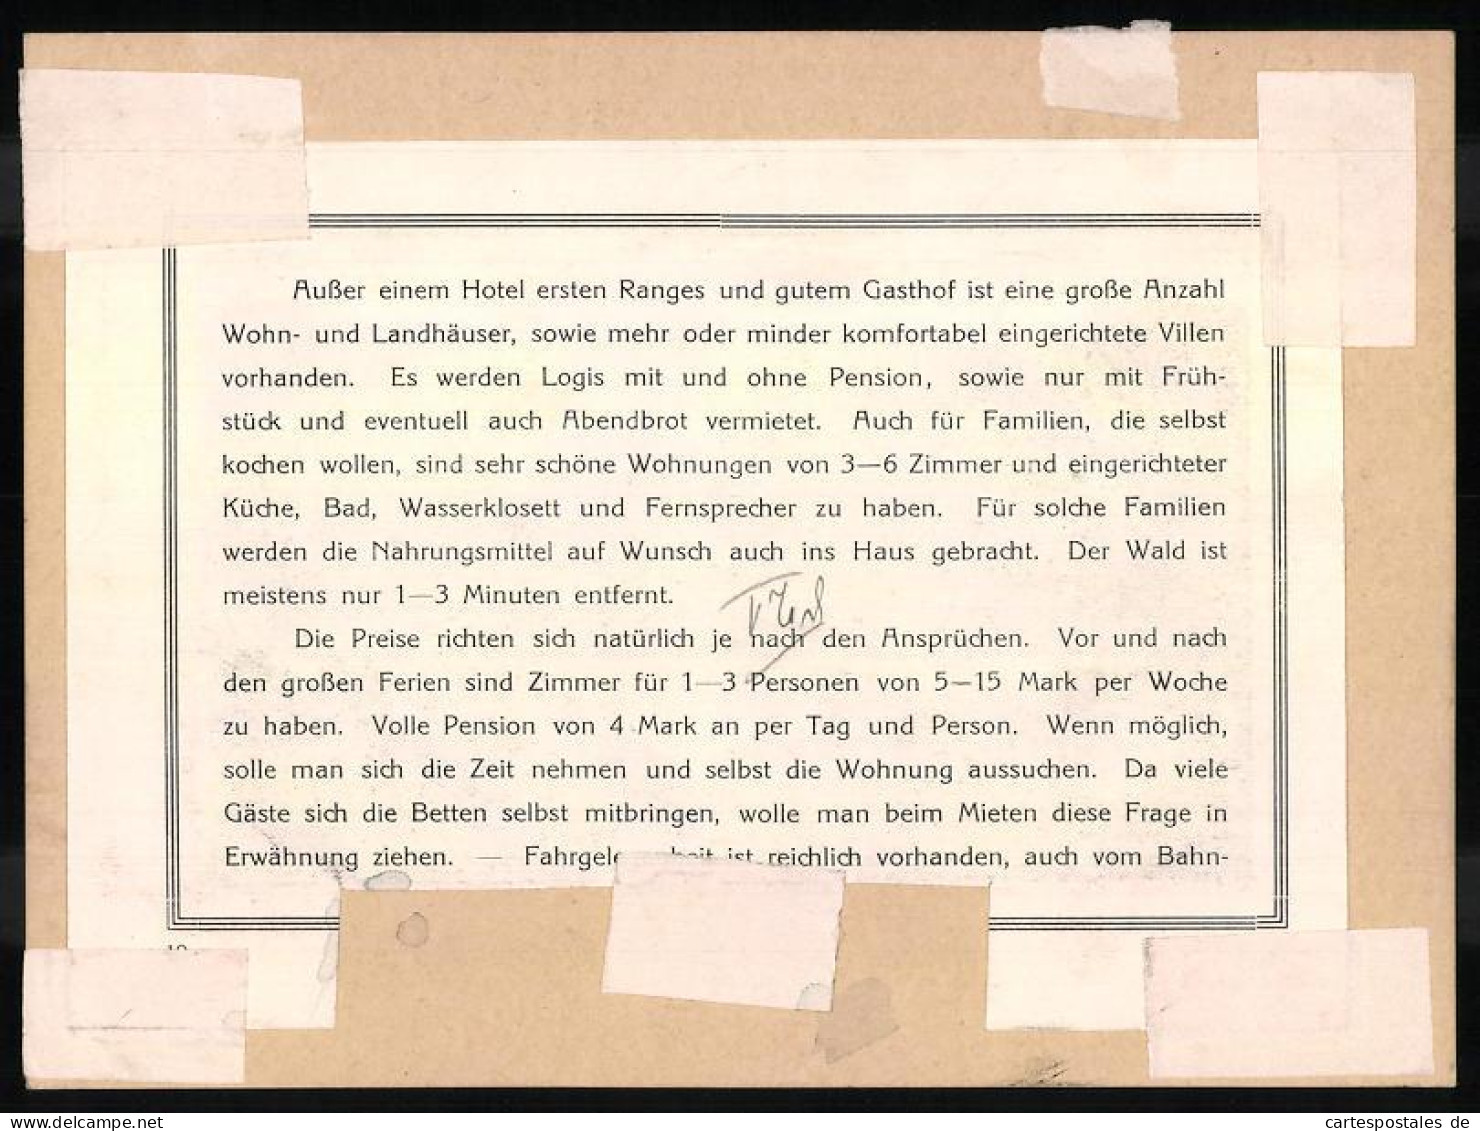 Fotografie - Lichtdruck Brück & Sohn Meissen, Ansicht Bärenfels, Hofehübel & Tellkoppe  - Places